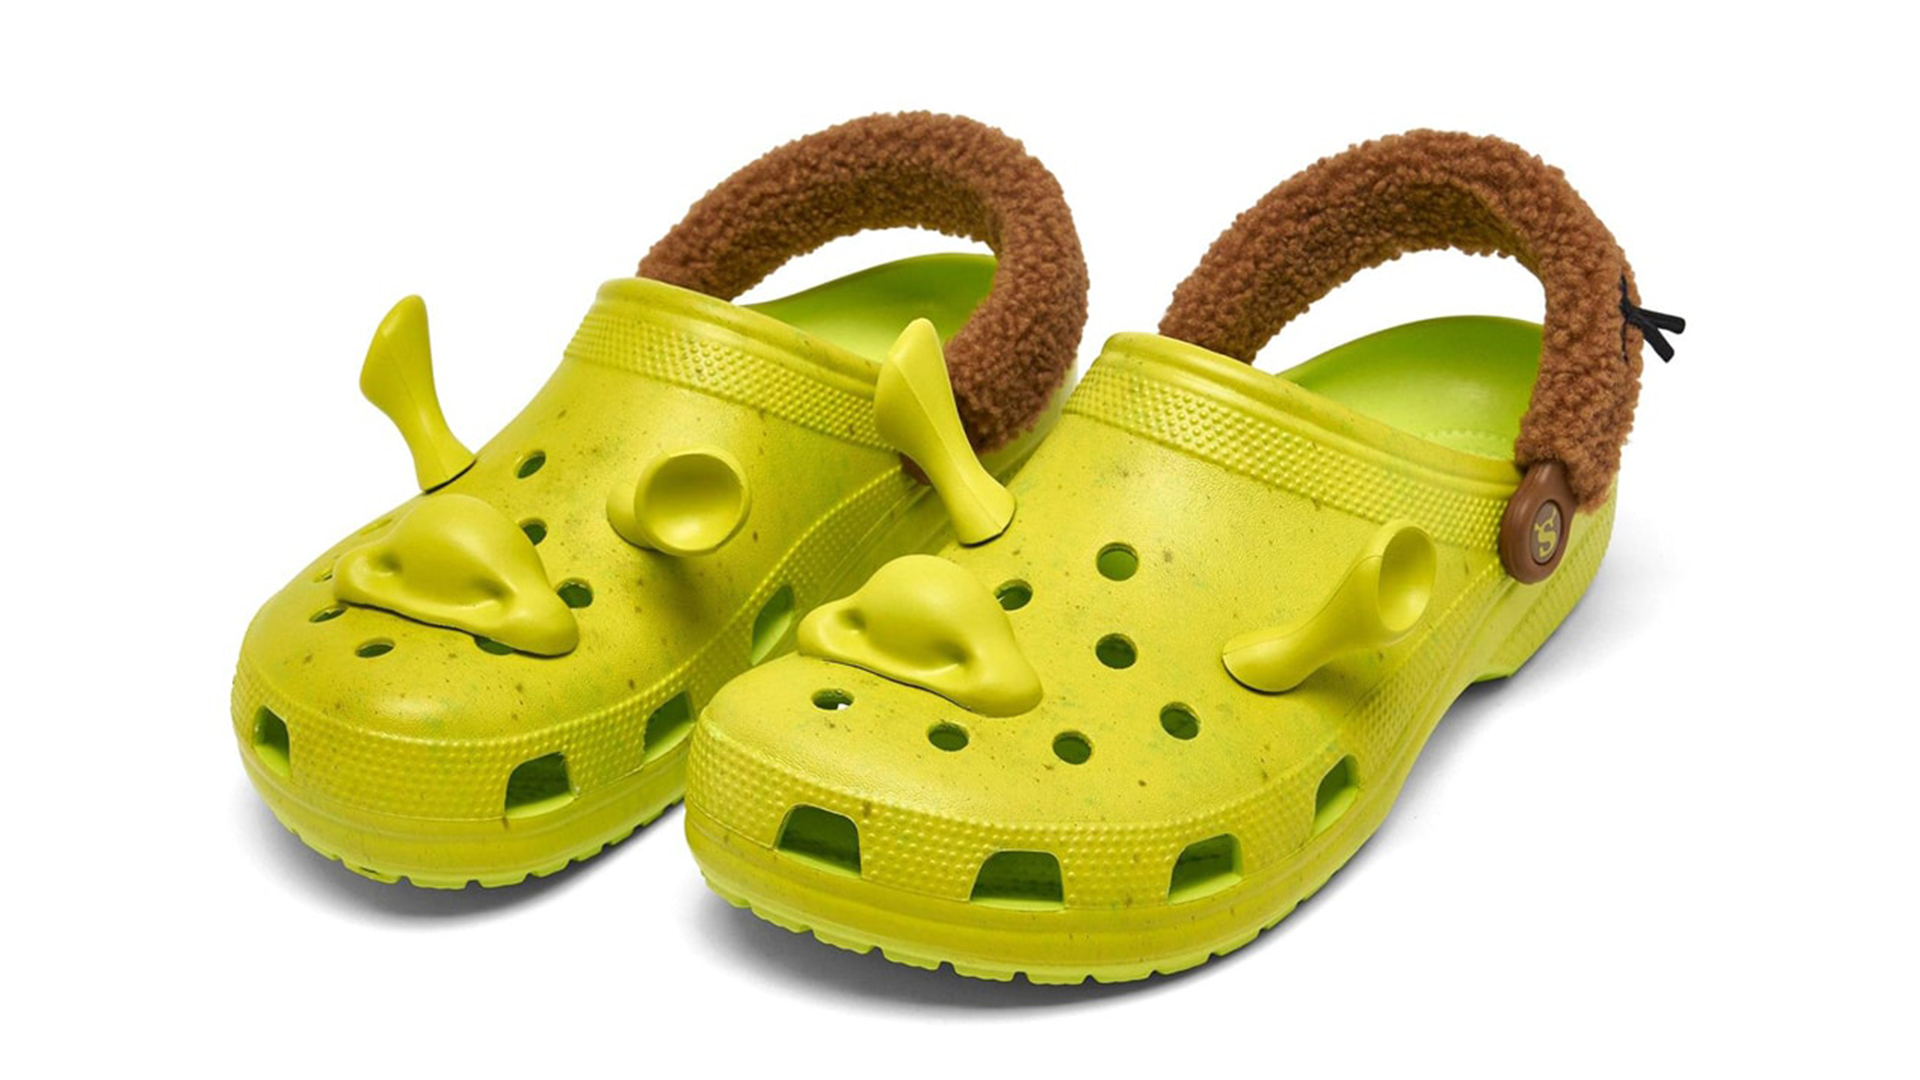 The Crocs Collabs Aren't Ogre Yet: Shrek x Crocs Is Coming